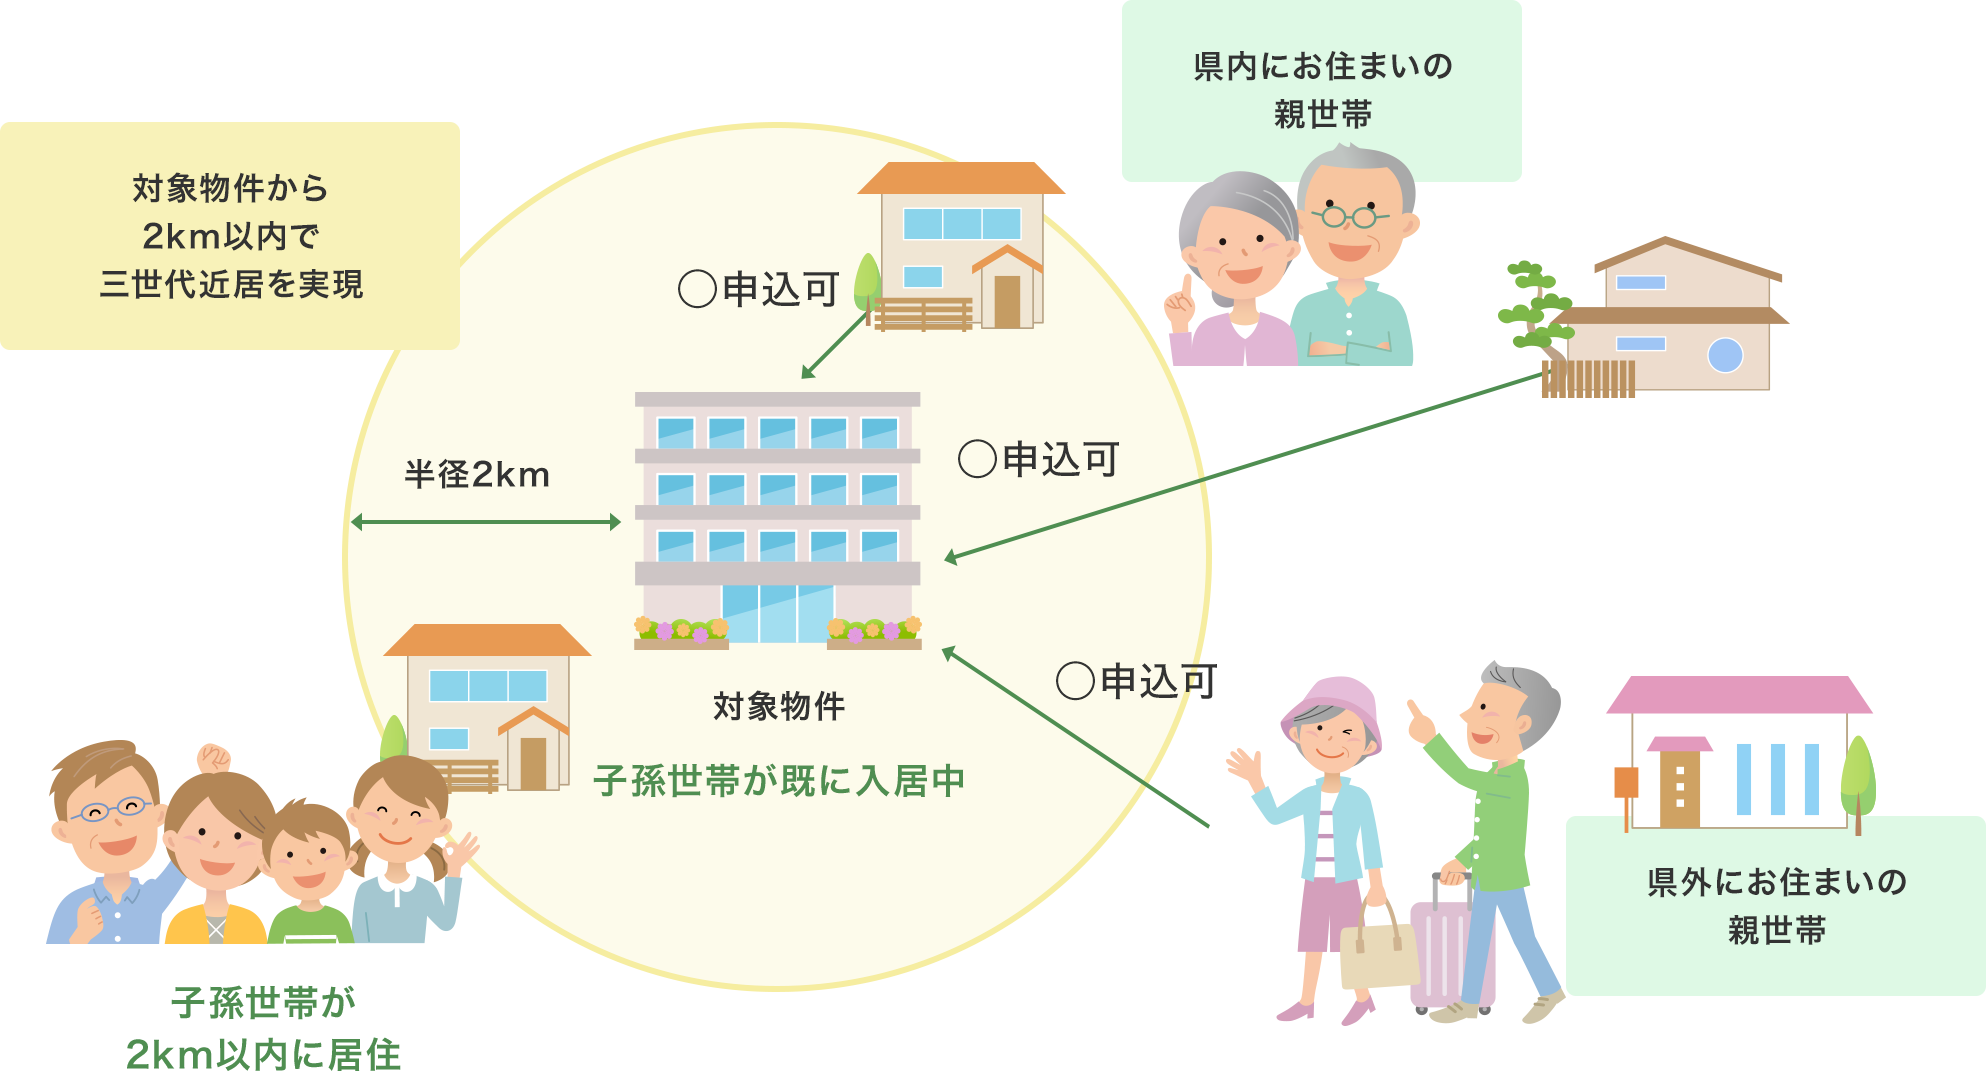 (2)対象物件または対象物件から2km以内に、子孫世帯が既に住んでいる場合